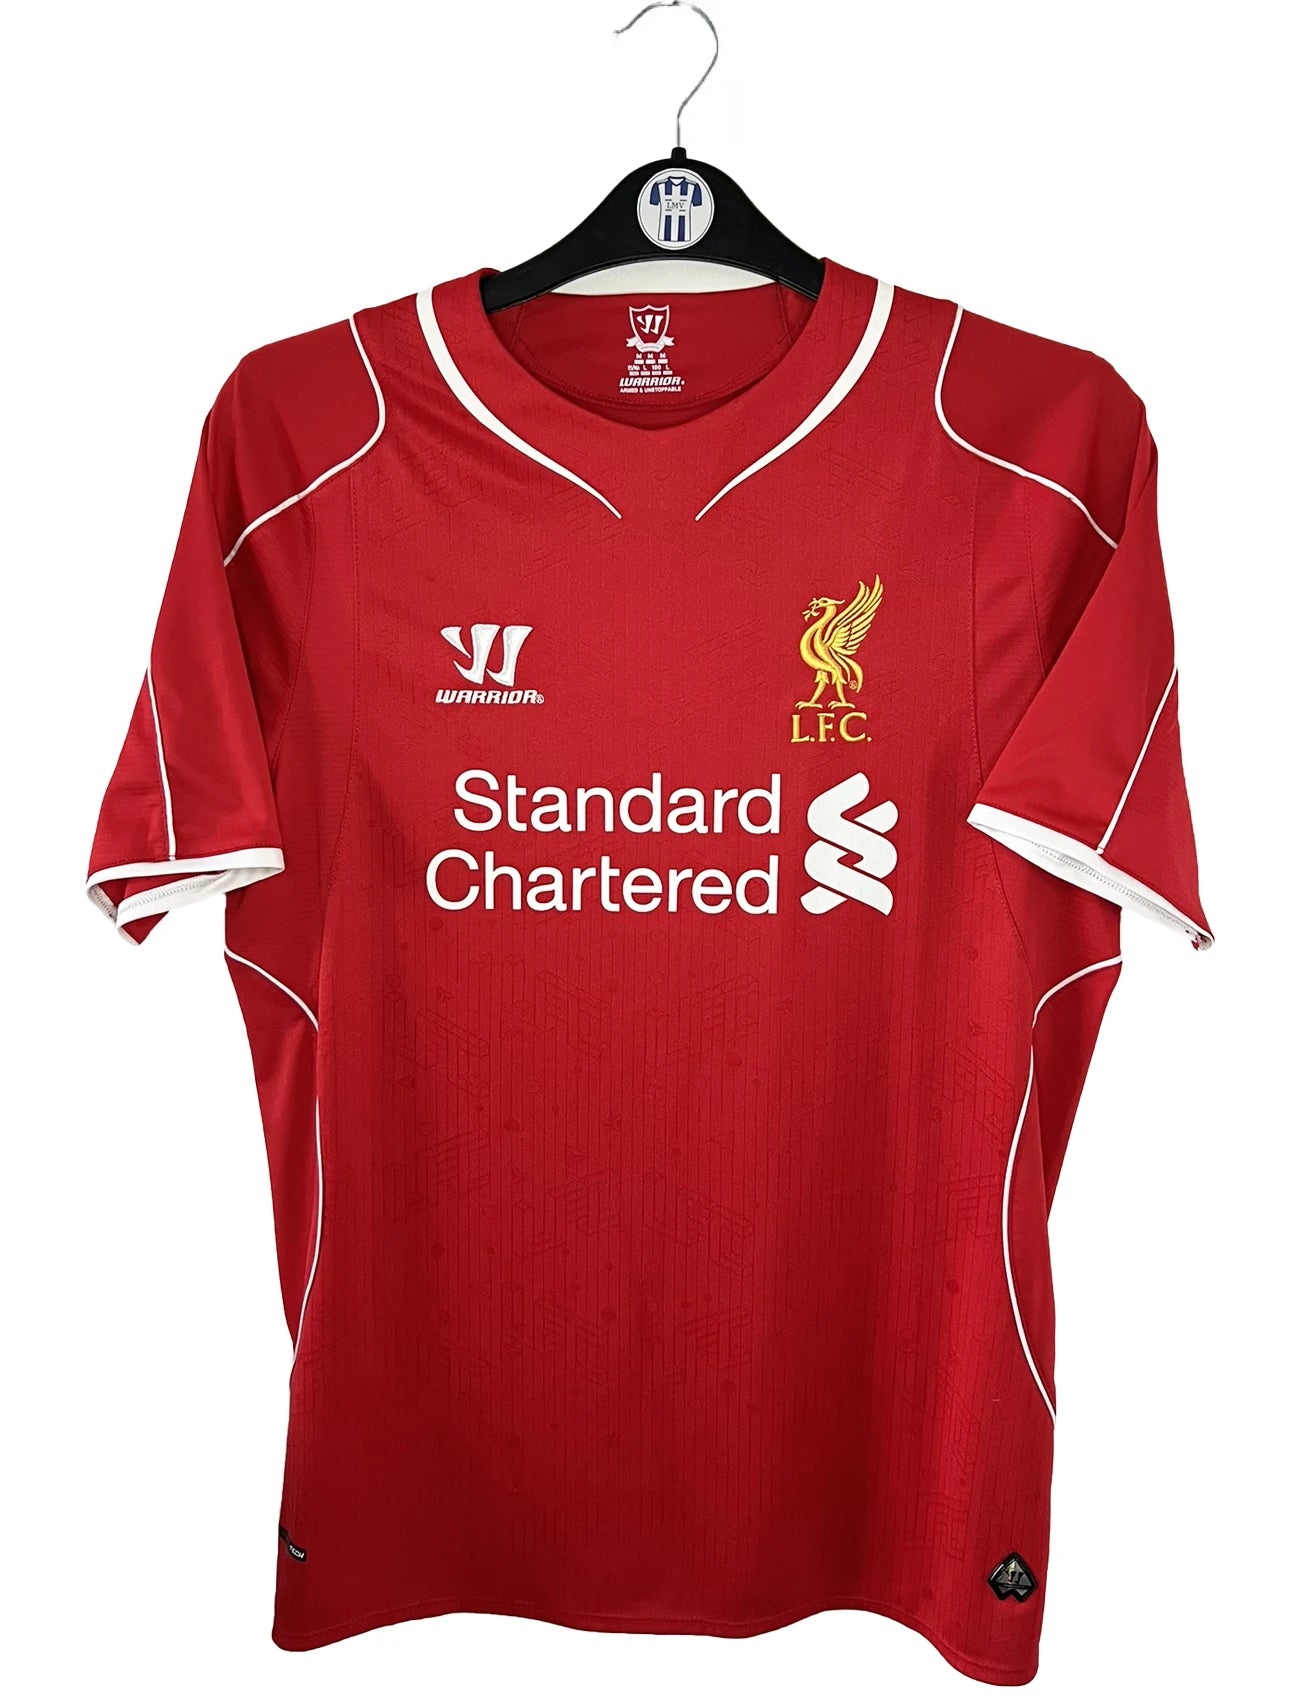 Maillot de foot rétro/vintage authentique rouge warrior Liverpool domicile 2014-2015 Balotelli flocage